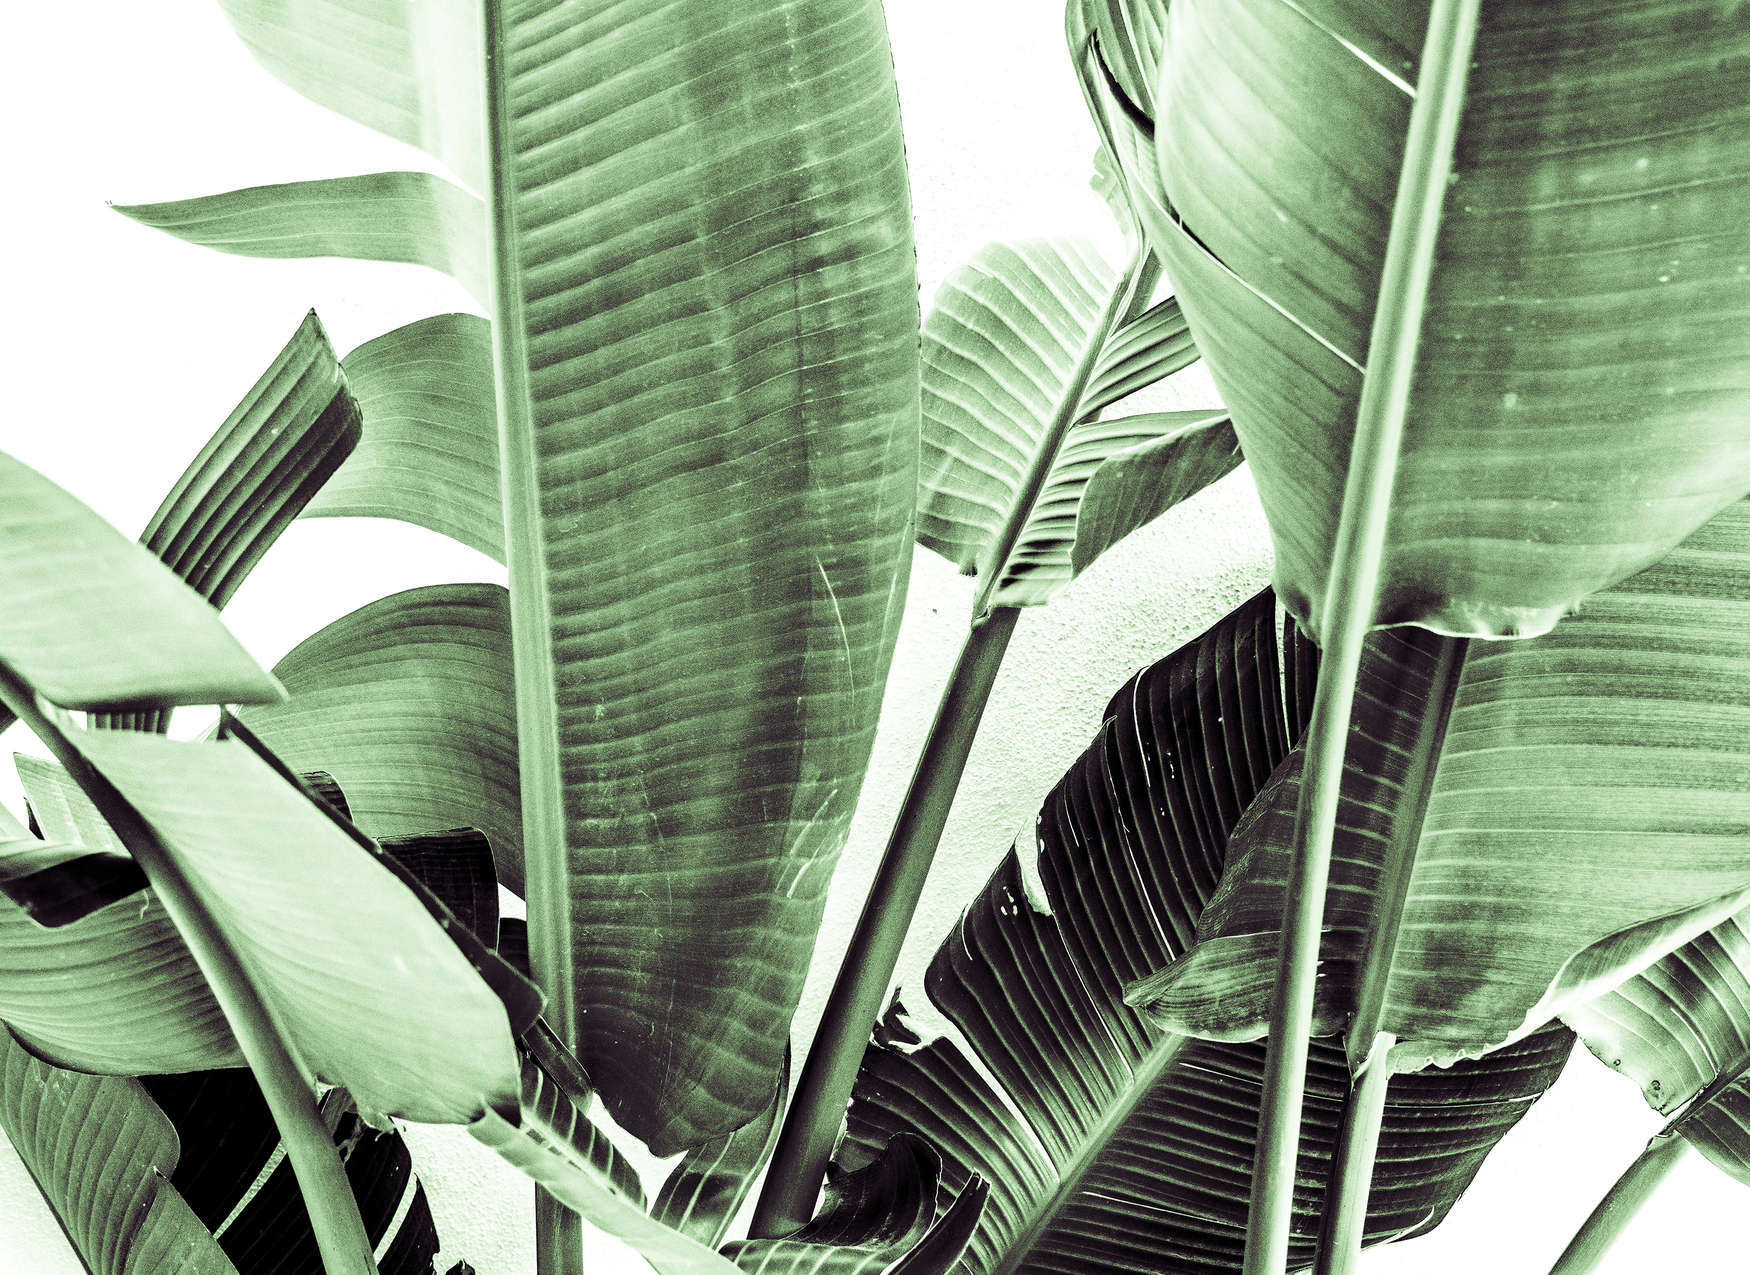             Fototapete Detailaufnahme von Palmenblättern – Grün, Weiß
        